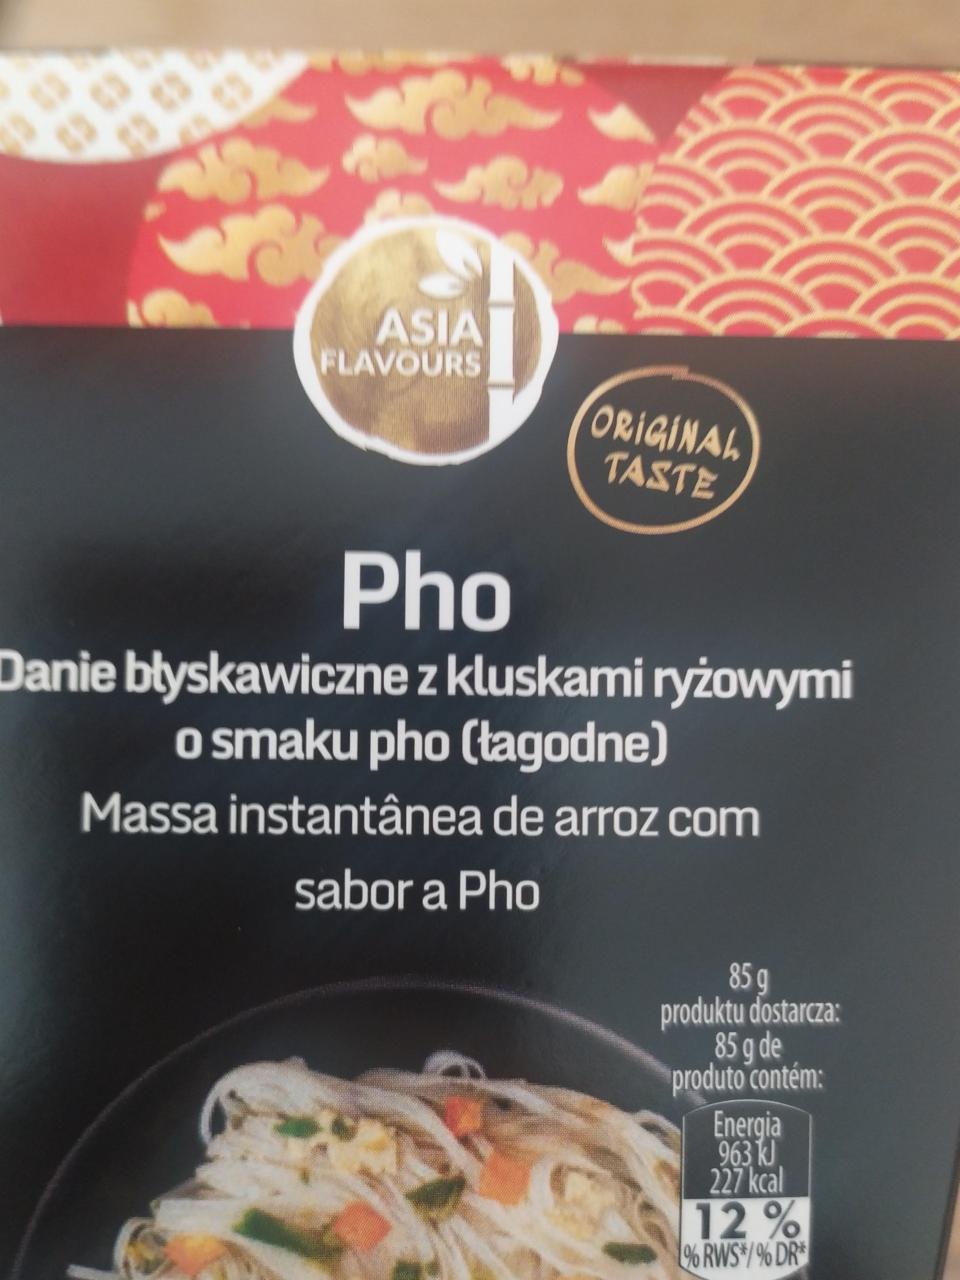 Zdjęcia - Danie błyskawiczne z kluskam ryżowymi o smaku pho Asia Flavours